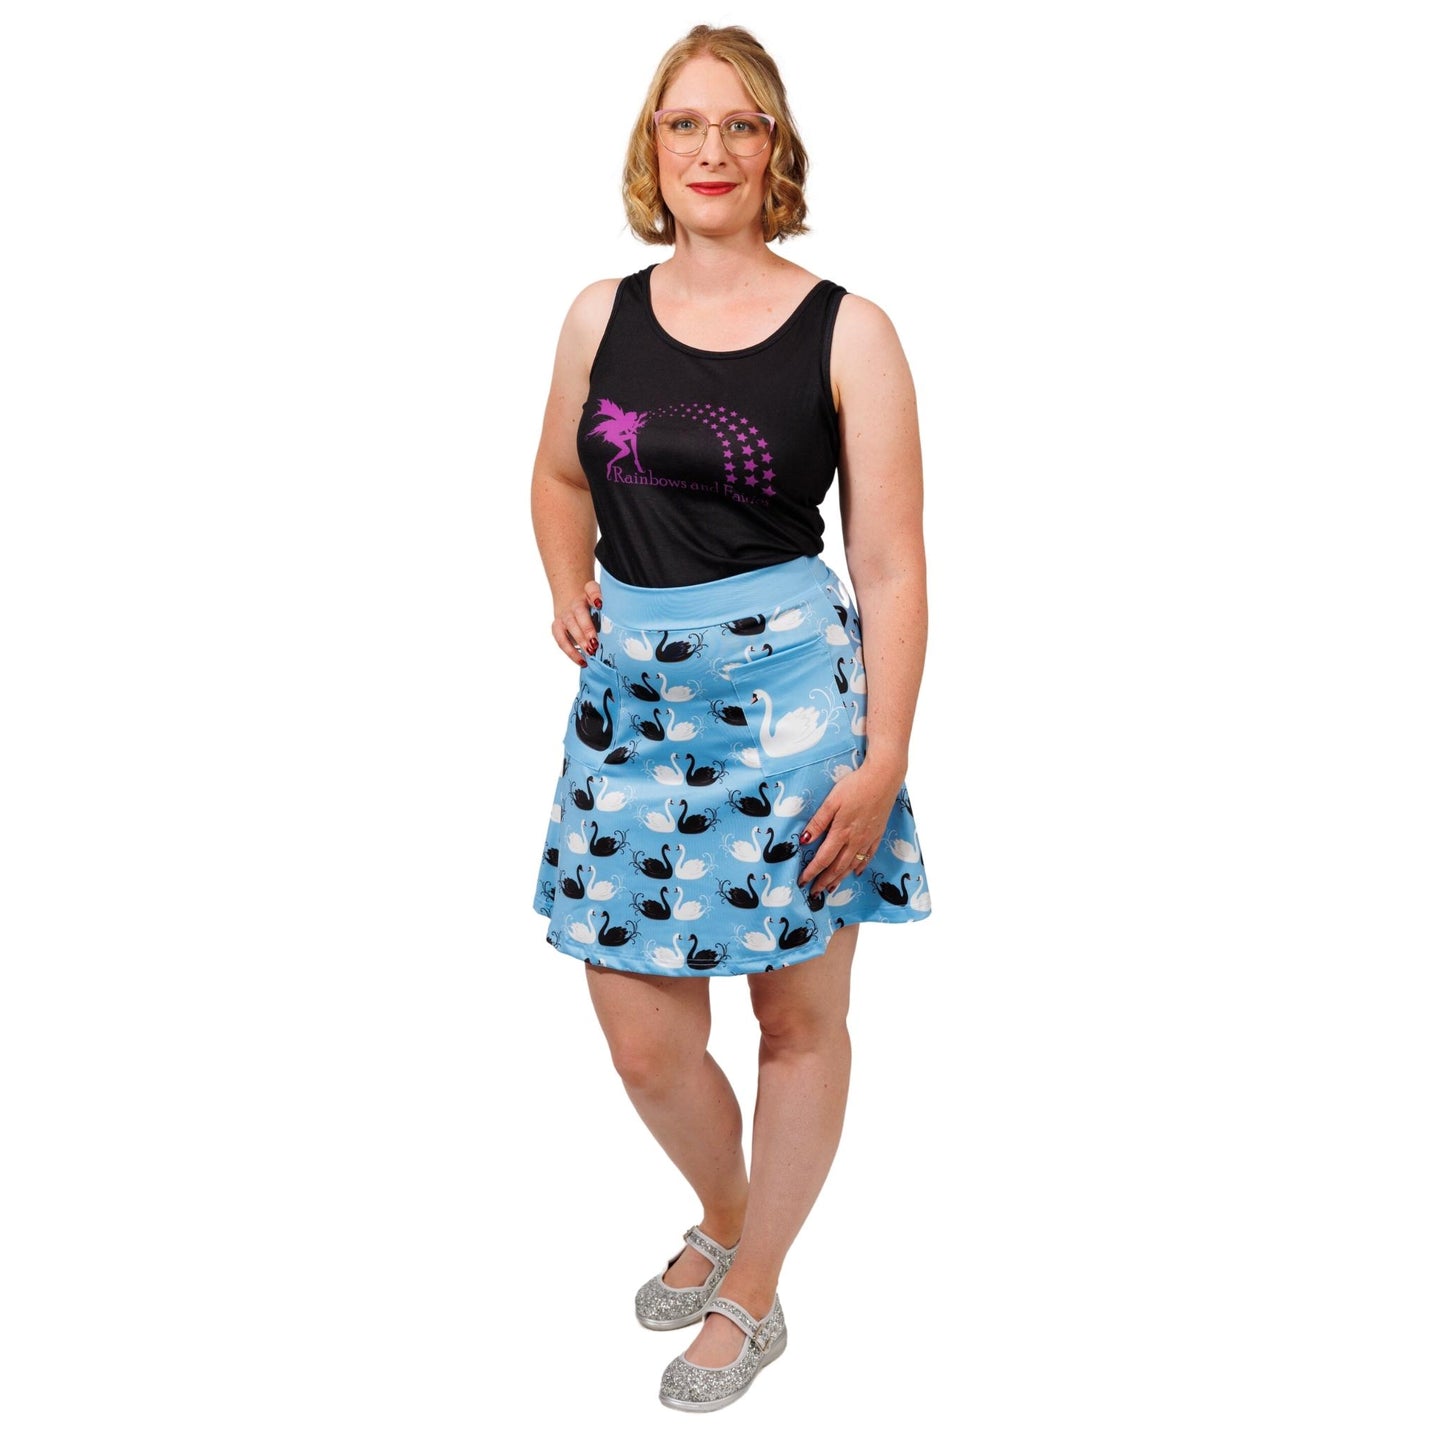 Grace Short Skirt by RainbowsAndFairies.com (Black & White - Swans - Birds - Skirt With Pockets - Aline Skirt - Vintage Inspired) - SKU: CL_SHORT_GRACE_ORG - Pic 02